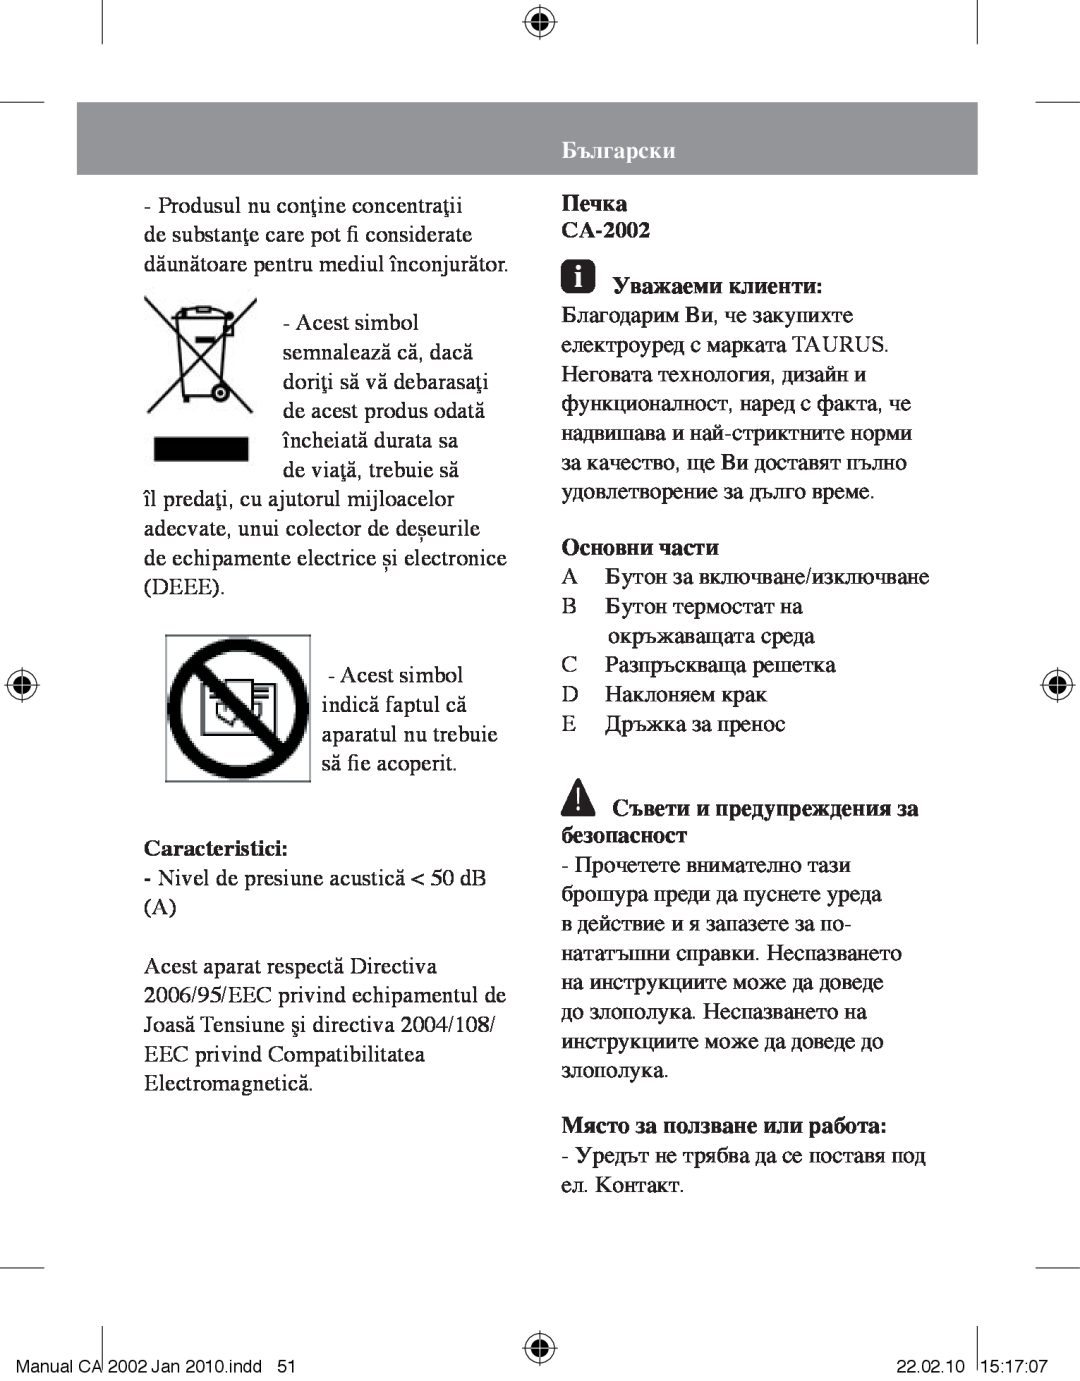 Taurus Group manual Caracteristici, Български, Печка CA-2002, Основни части, Съвети и предупреждения за безопасност 